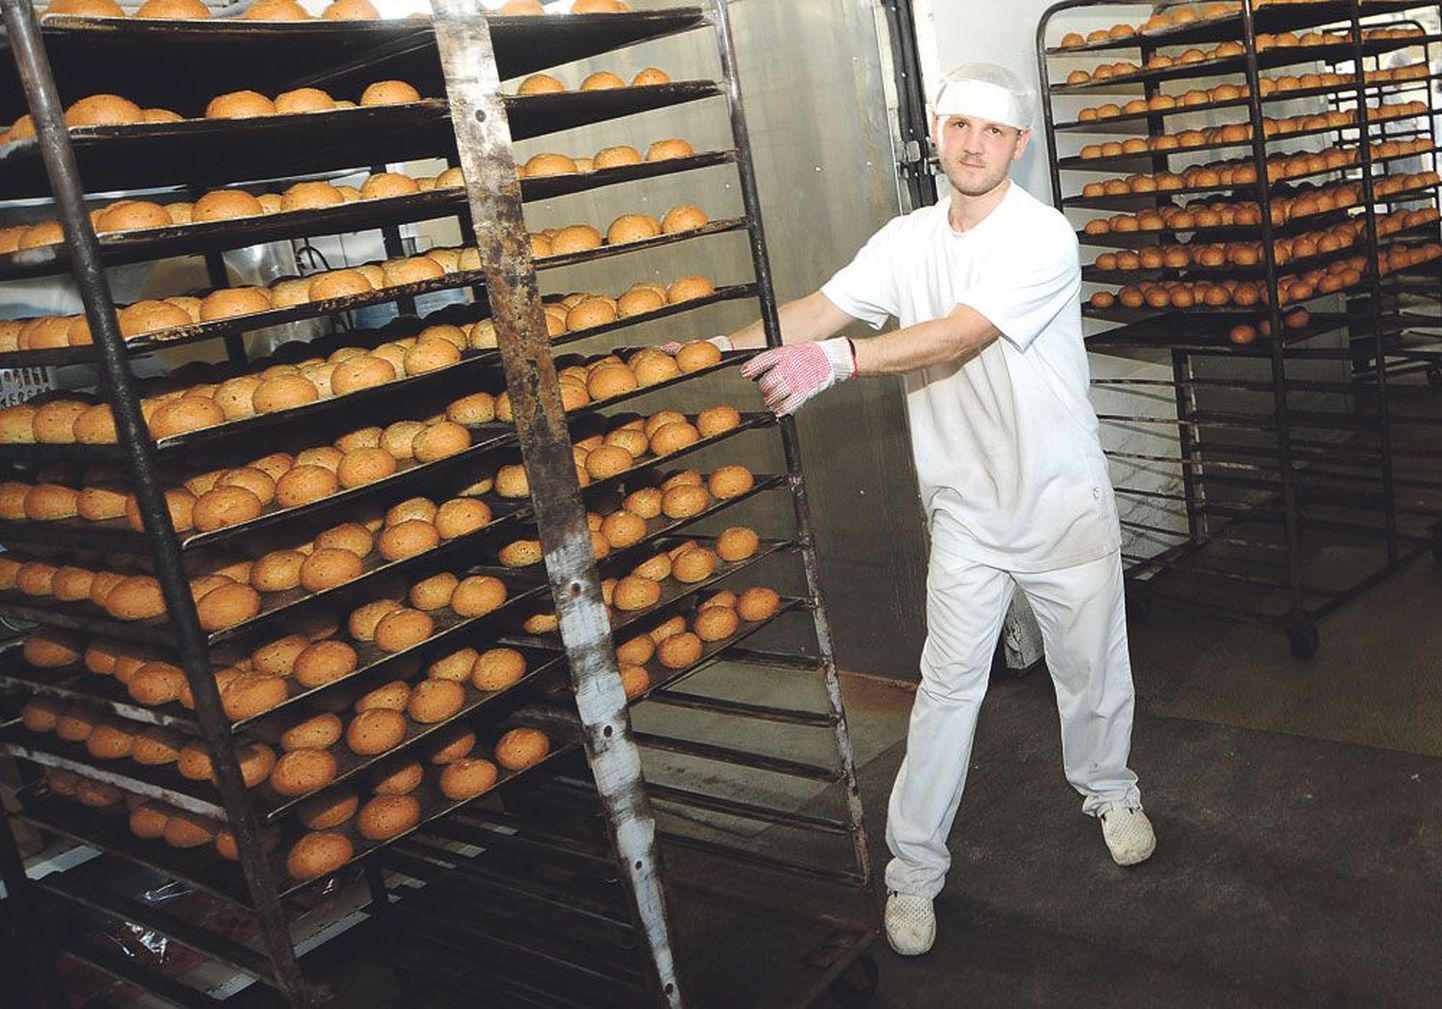 Задача работника пекарни Янека Мюрисеппа – поставить поддоны с булочками в печь и ждать, пока они не подрумянятся.